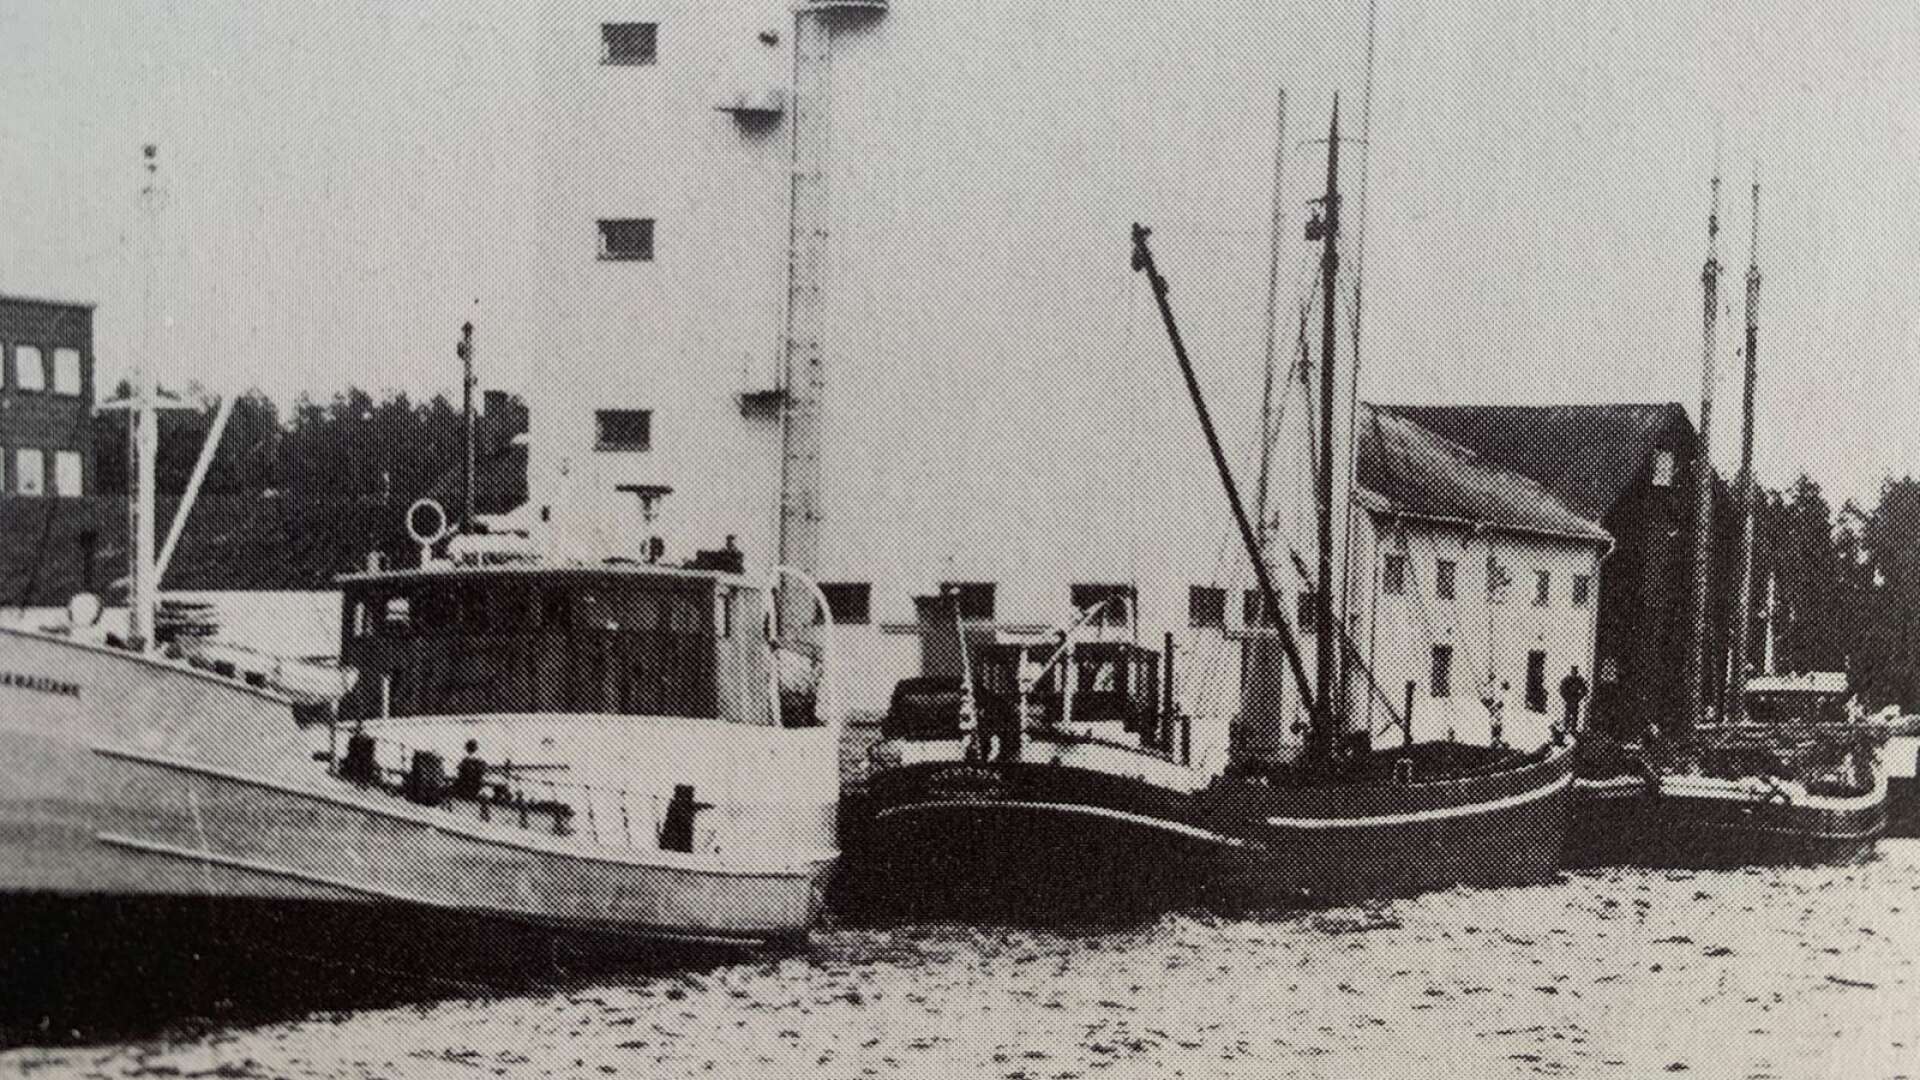 Fem båtar ligger samtidigt vid kajen nedanför Centralföreningens
 imponerande byggnad. Båtarna heter Kanaltank, Bertha, Sofia,
 Forsvik och Tankö. Året är 1966.
